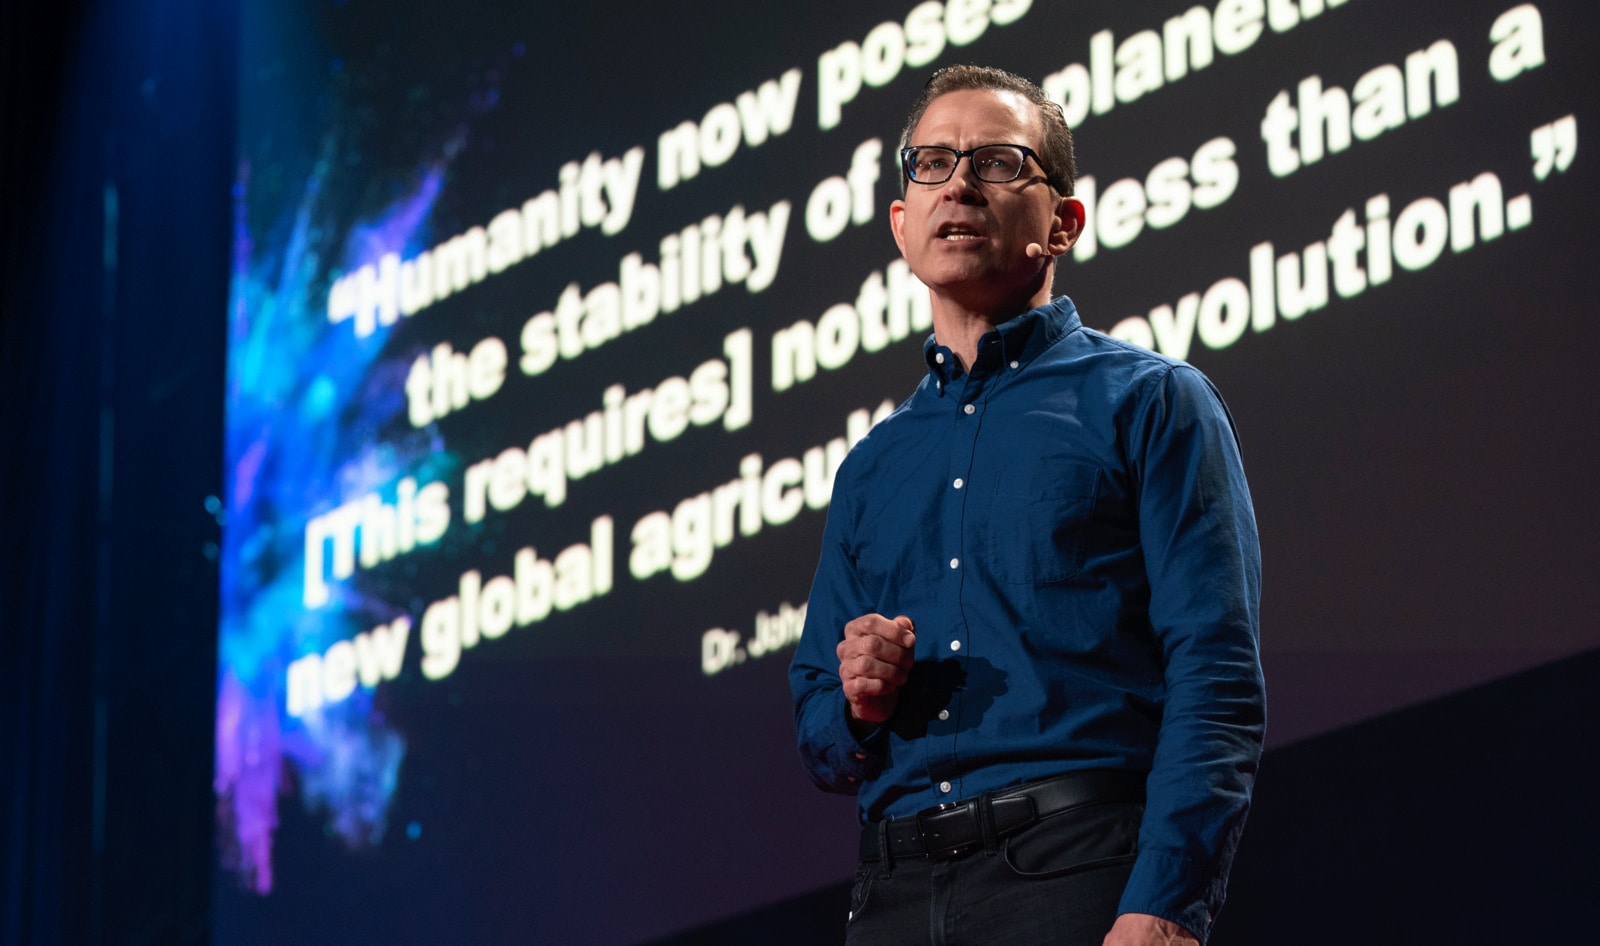 Vegan TED Talk Exceeds 500,000 Views in 24 Hours | VegNews